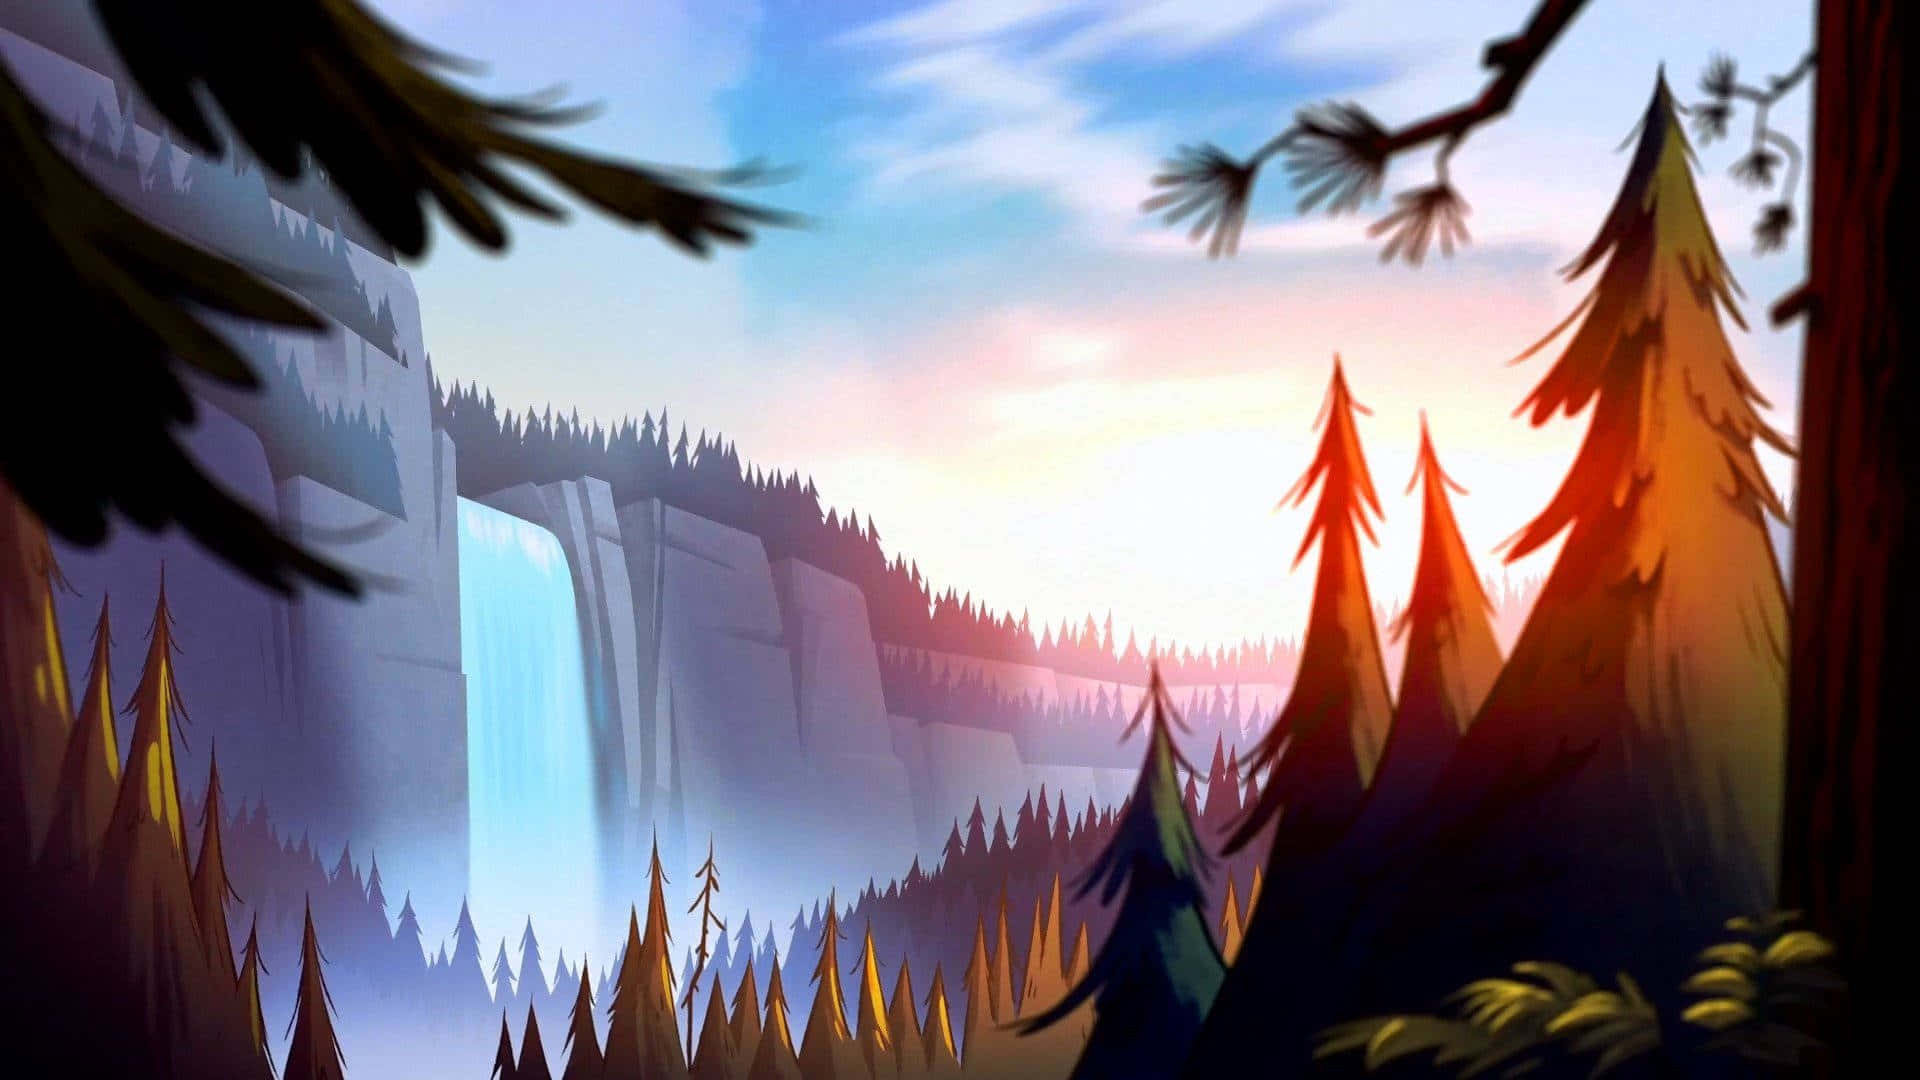 Majestic Waterfall Illustration Background